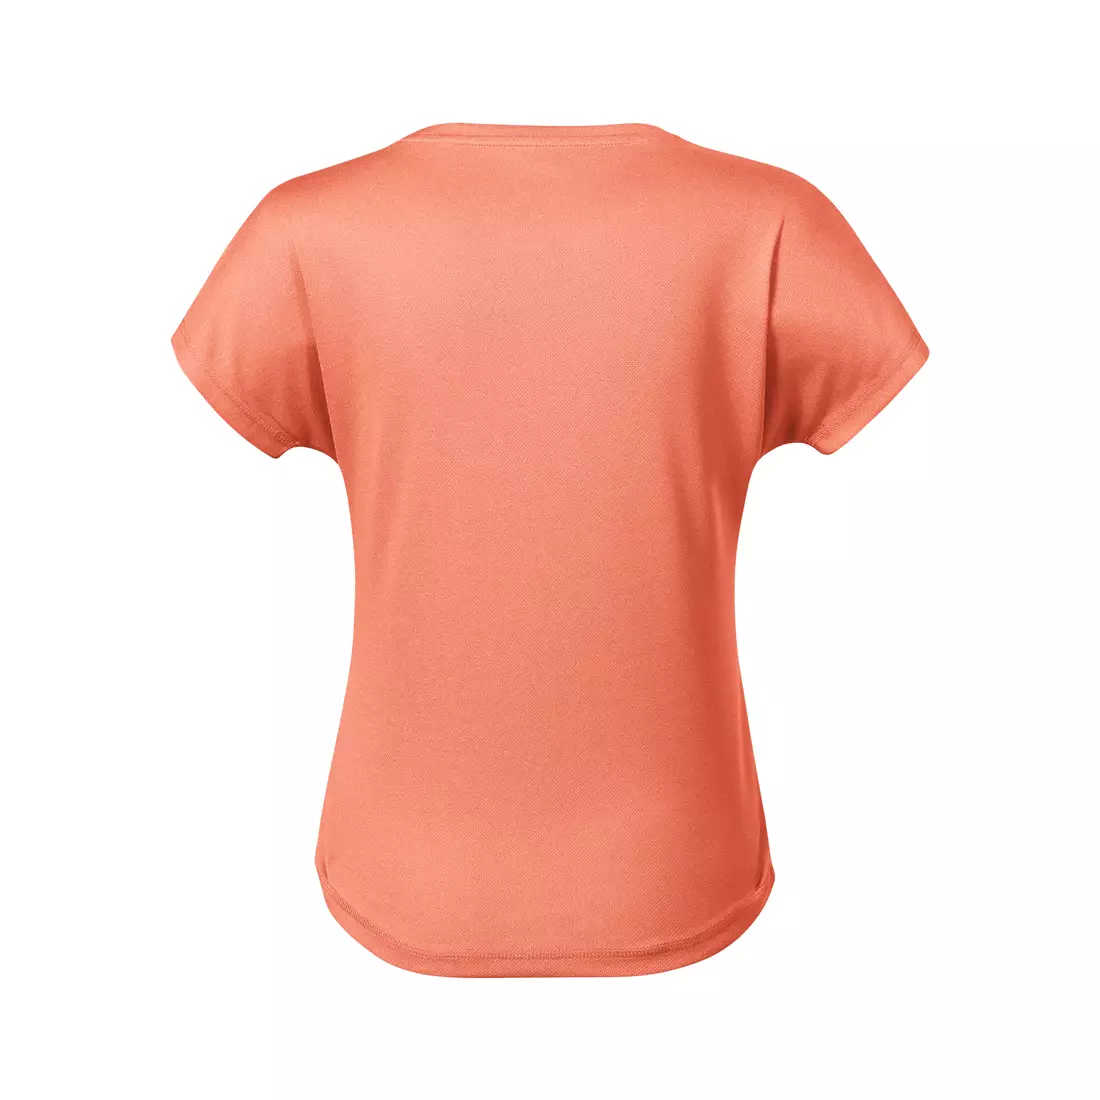 MALFINI Koszulka CHANCE GRS damska koszulka sportowa, krótki rękaw, micro poliester z recyklingu sunset melanż 811M912